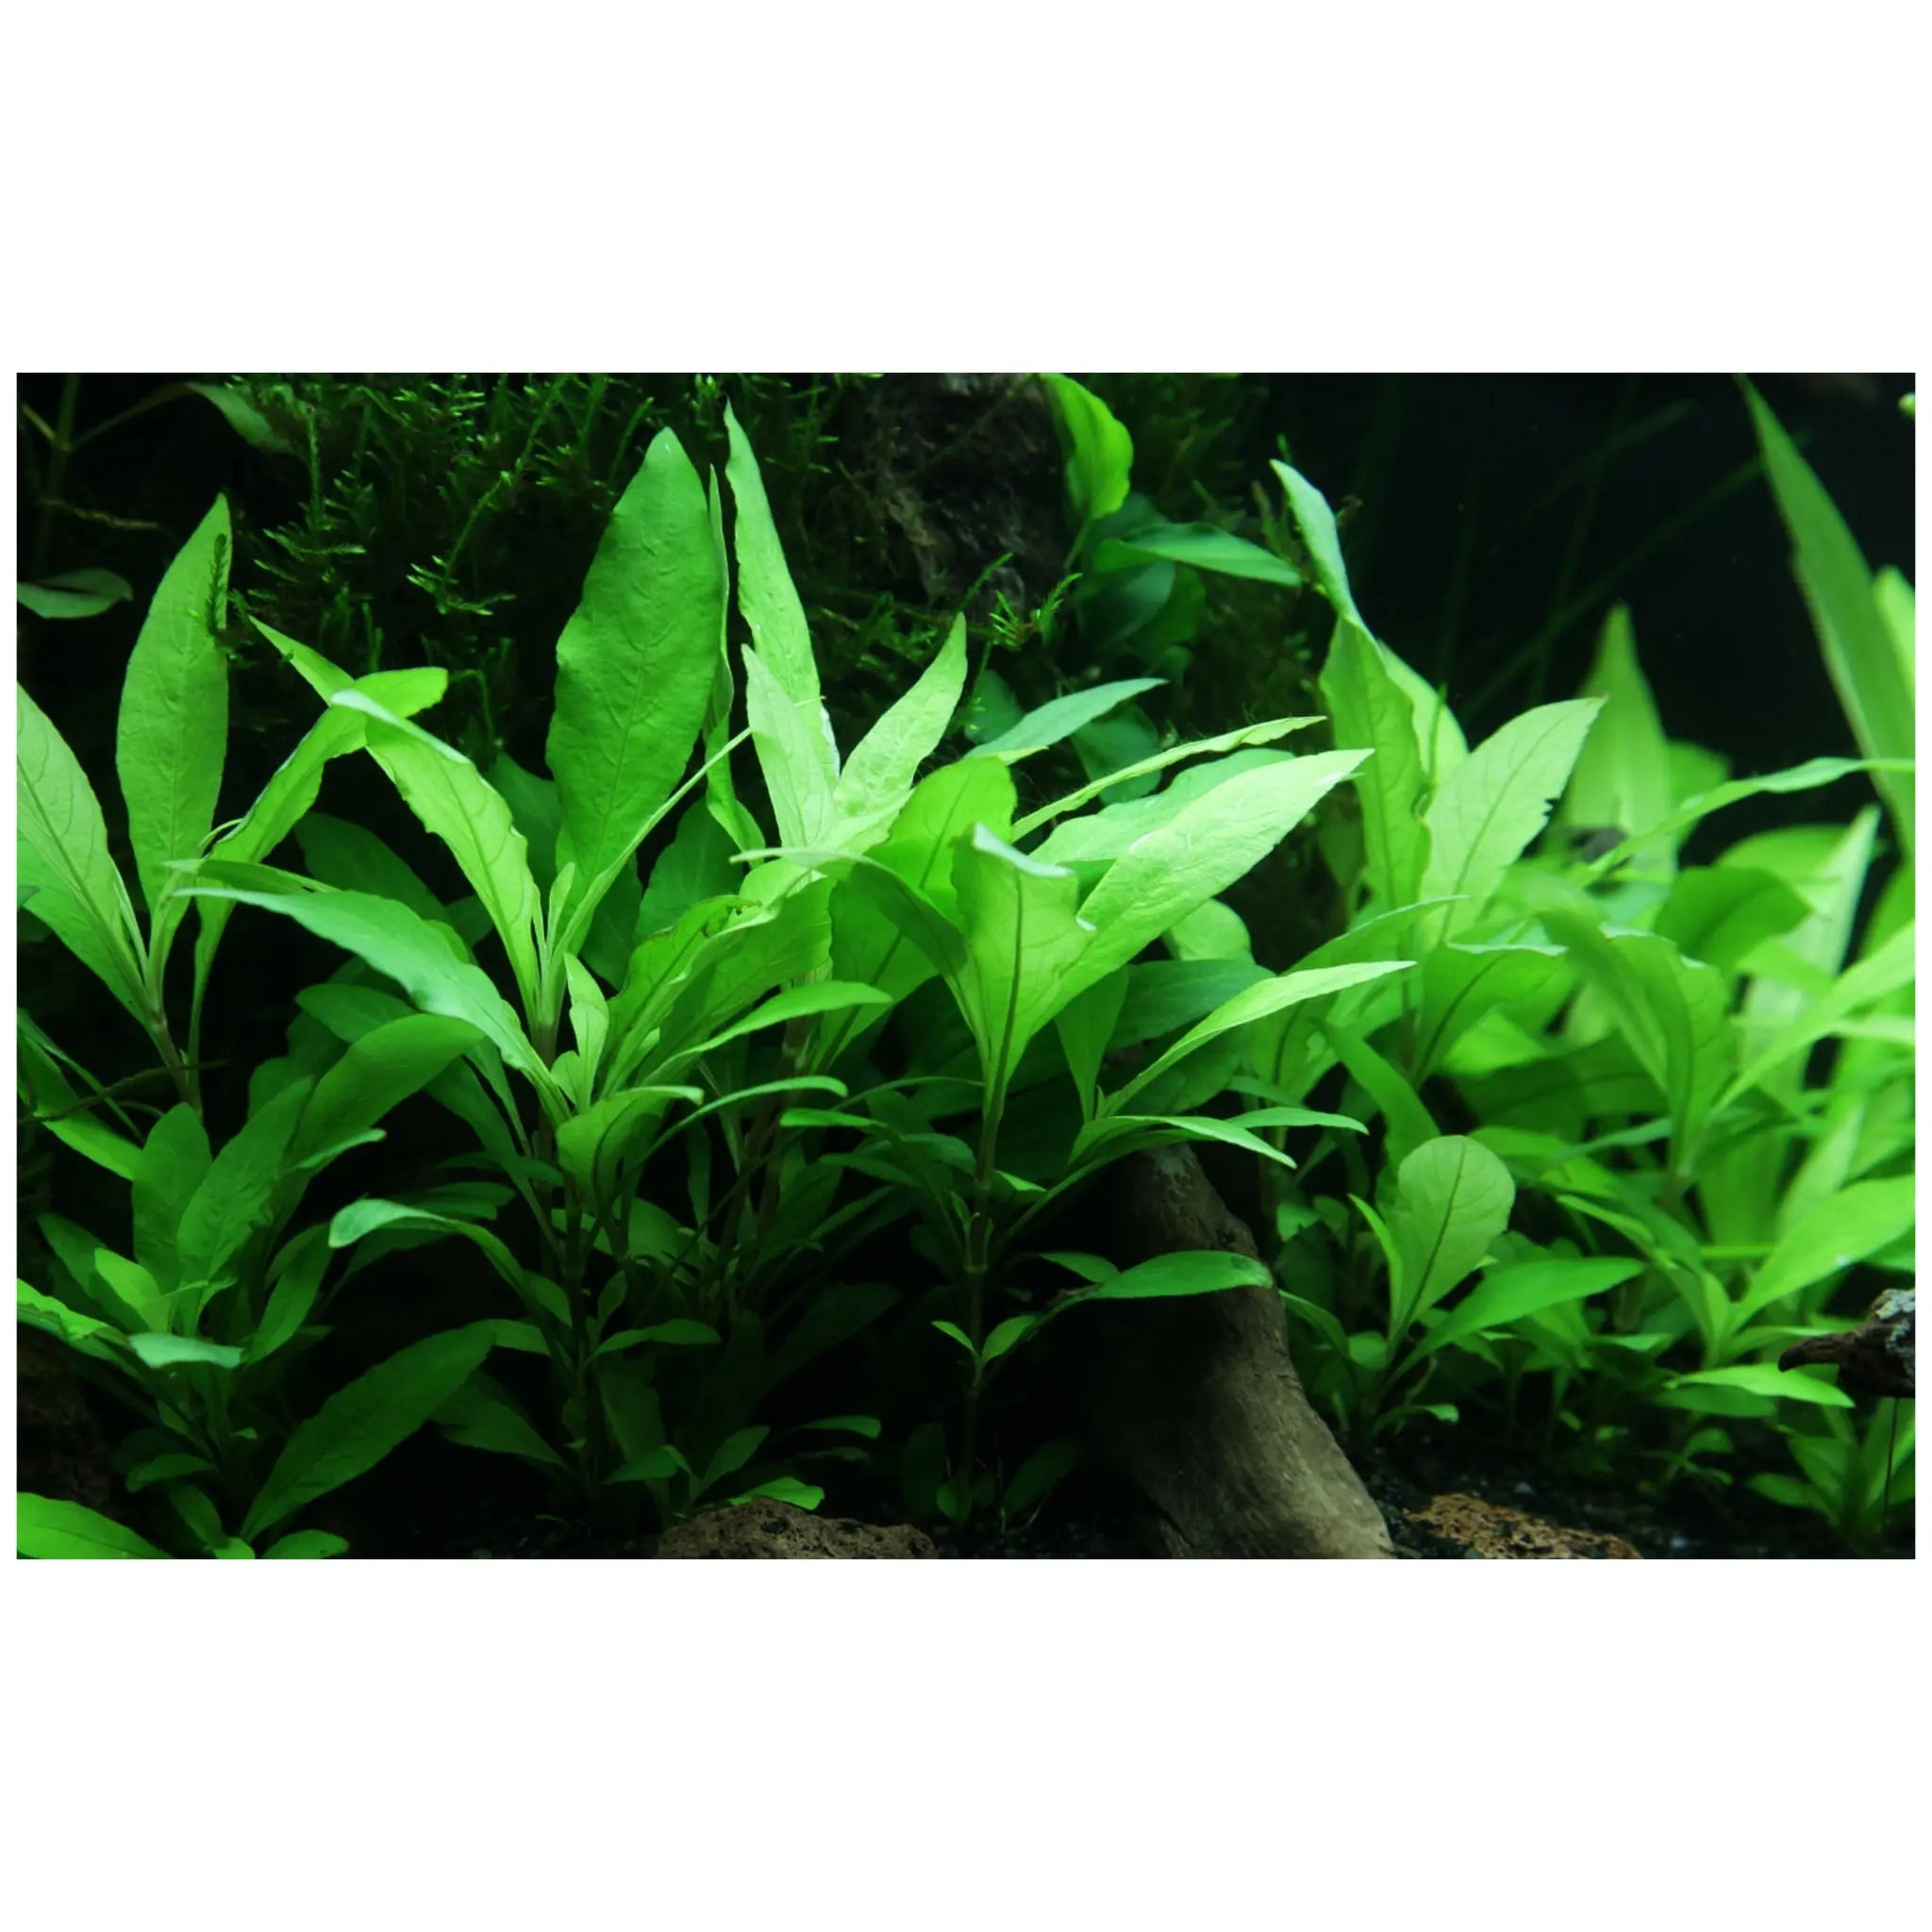 Hygrophila siamensis 53B in aquarium